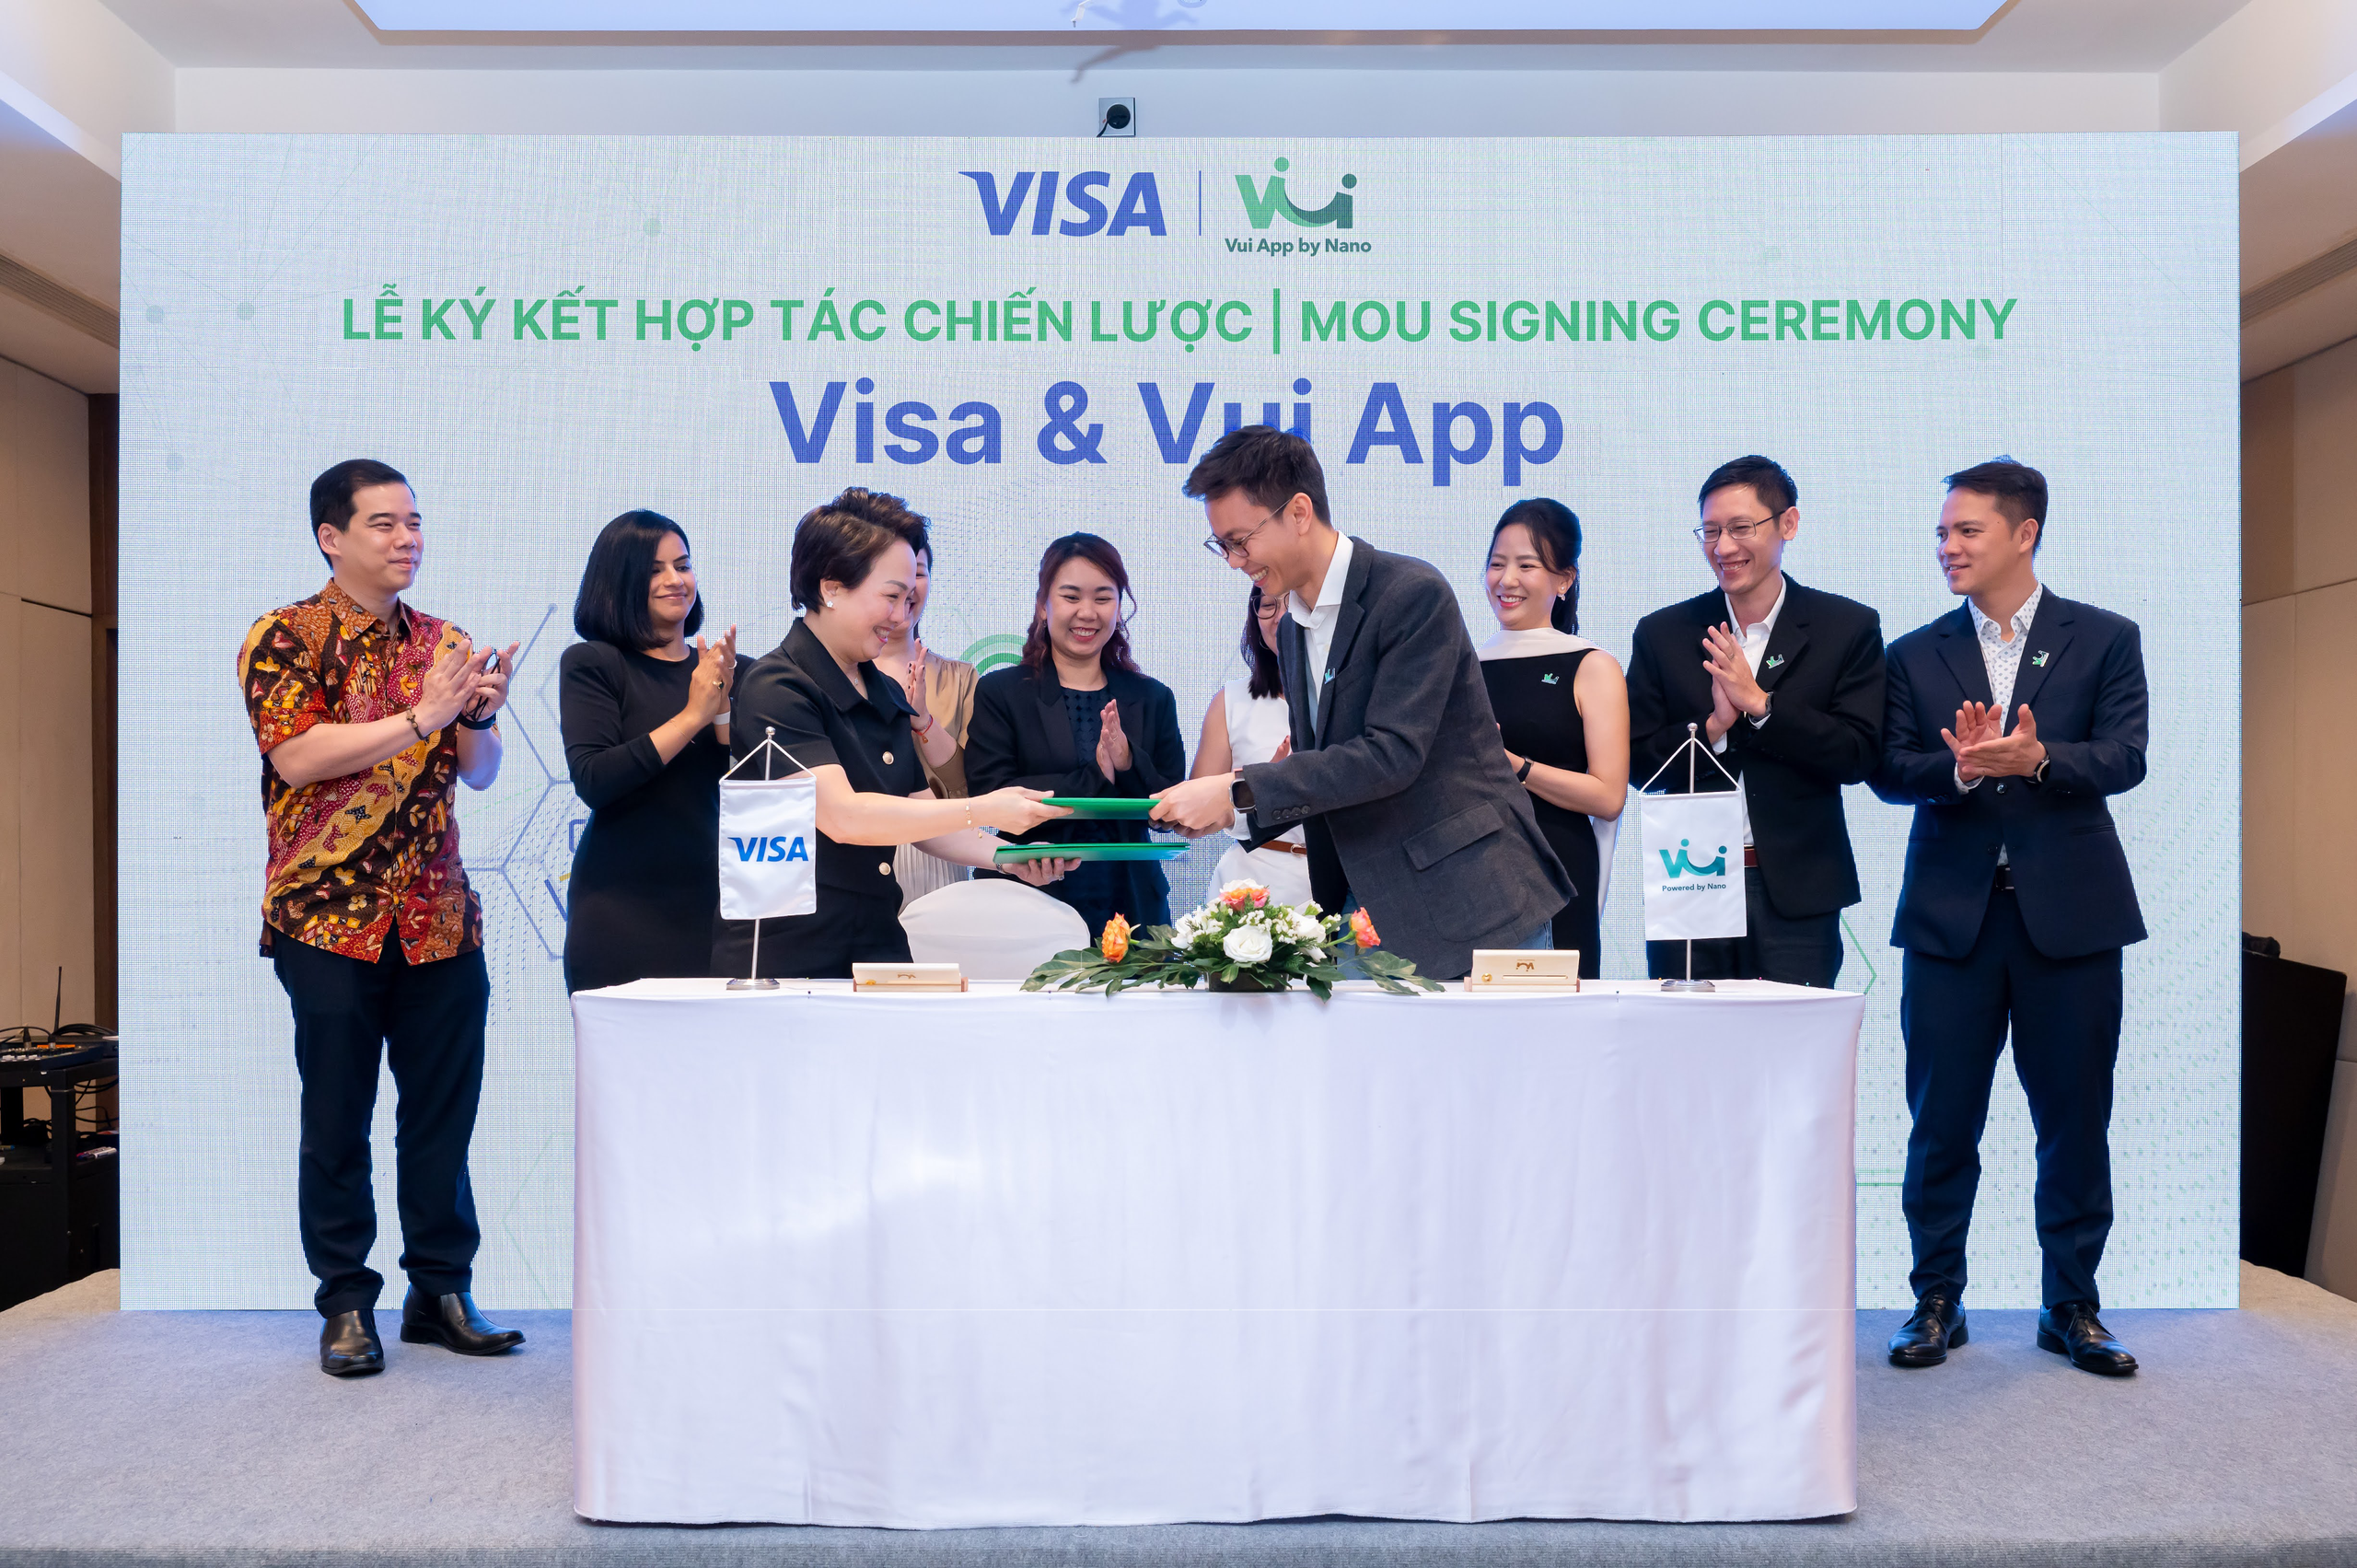 Startup Việt giúp người lao động rút trước tiền lương trong 60 giây bắt tay với công ty thanh toán điện tử hàng đầu thế giới, giải quyết "nỗi đau" của 17% nhân sự - Ảnh 1.